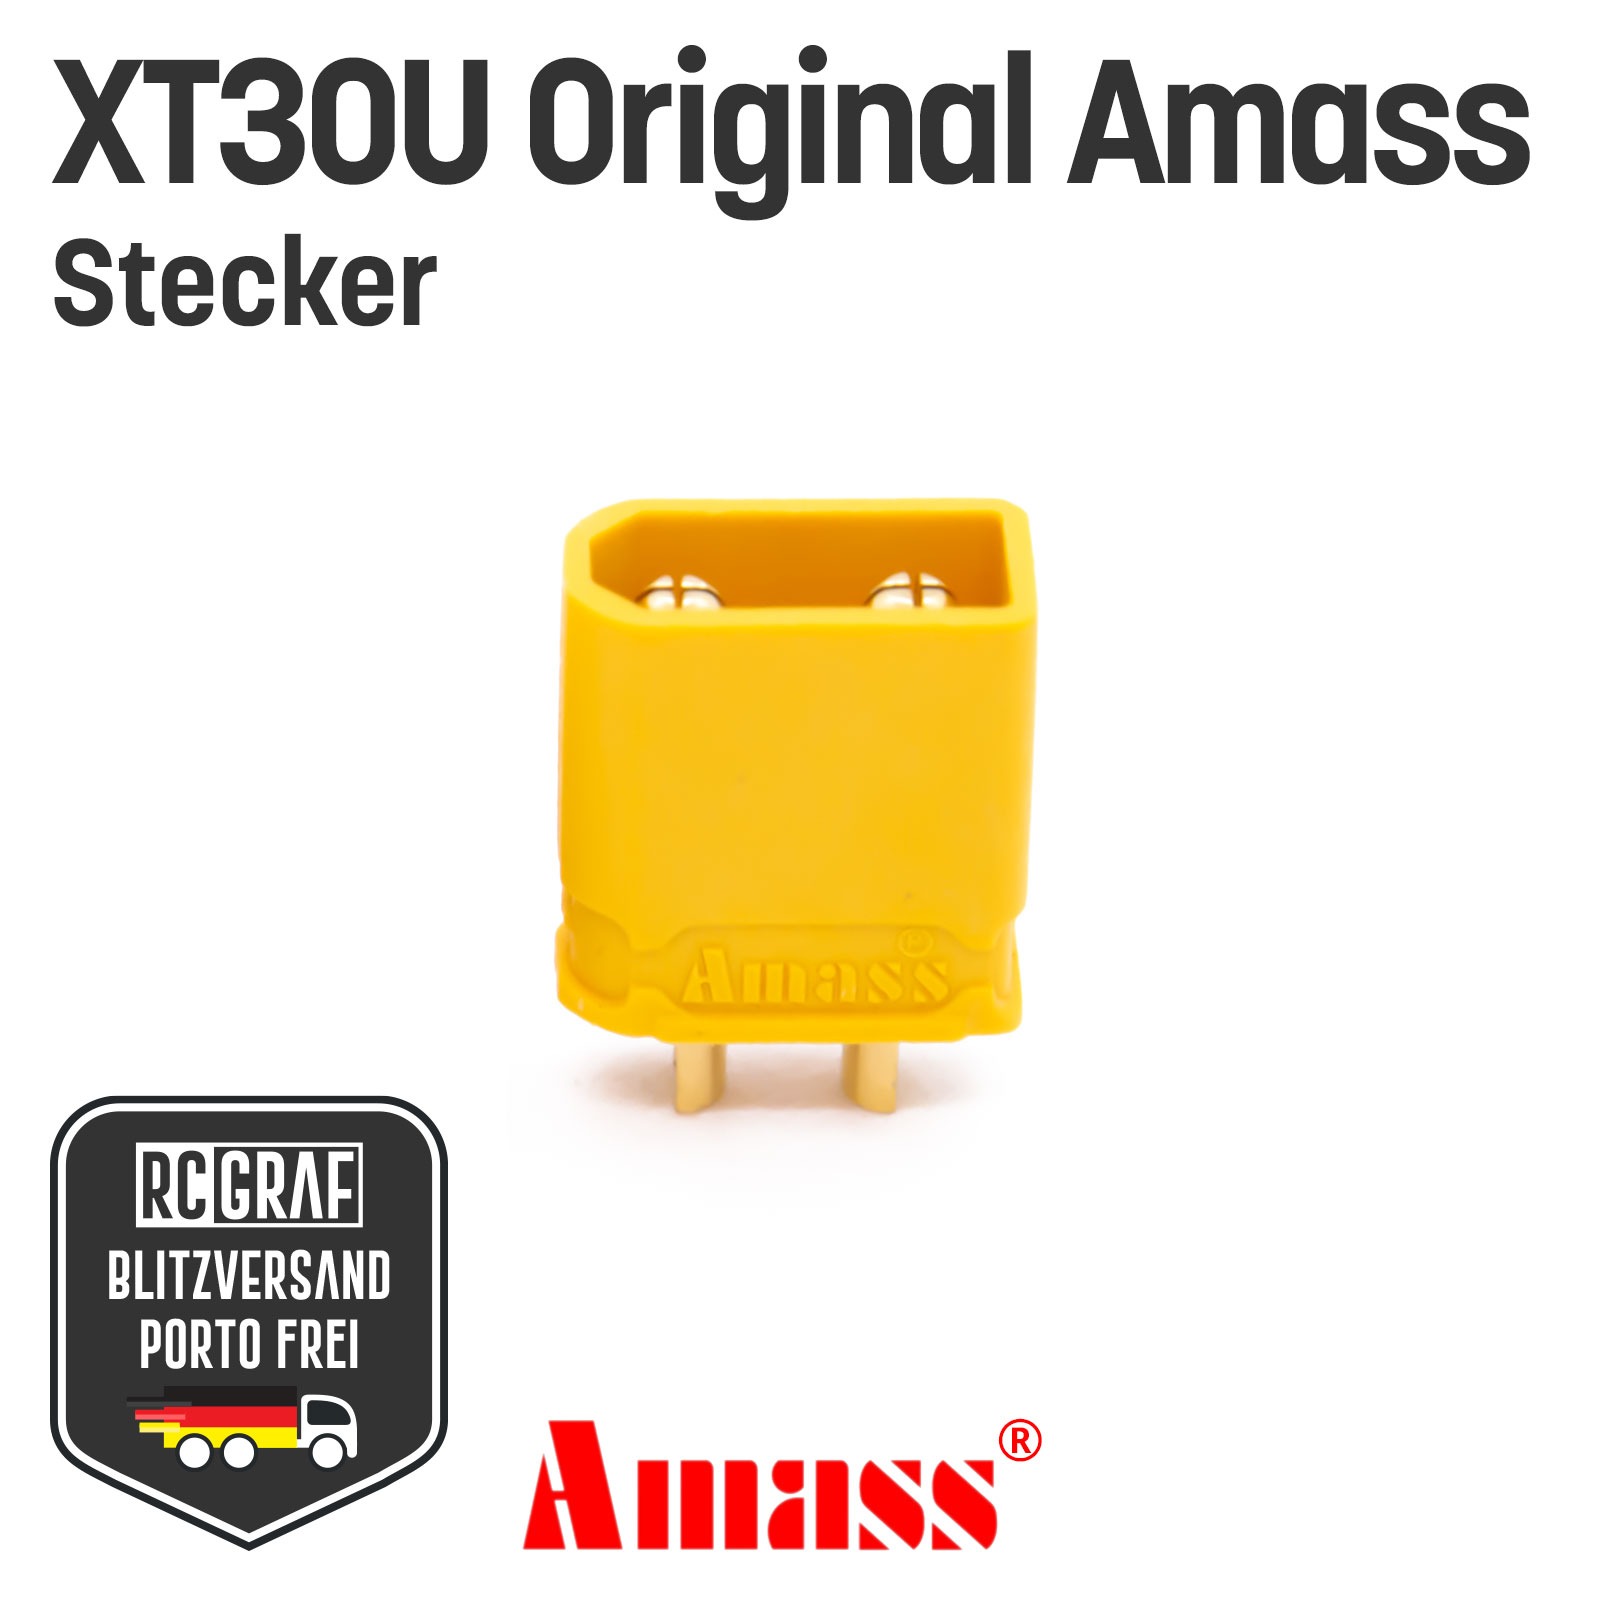 20 Stecker XT30U Original Amass 2